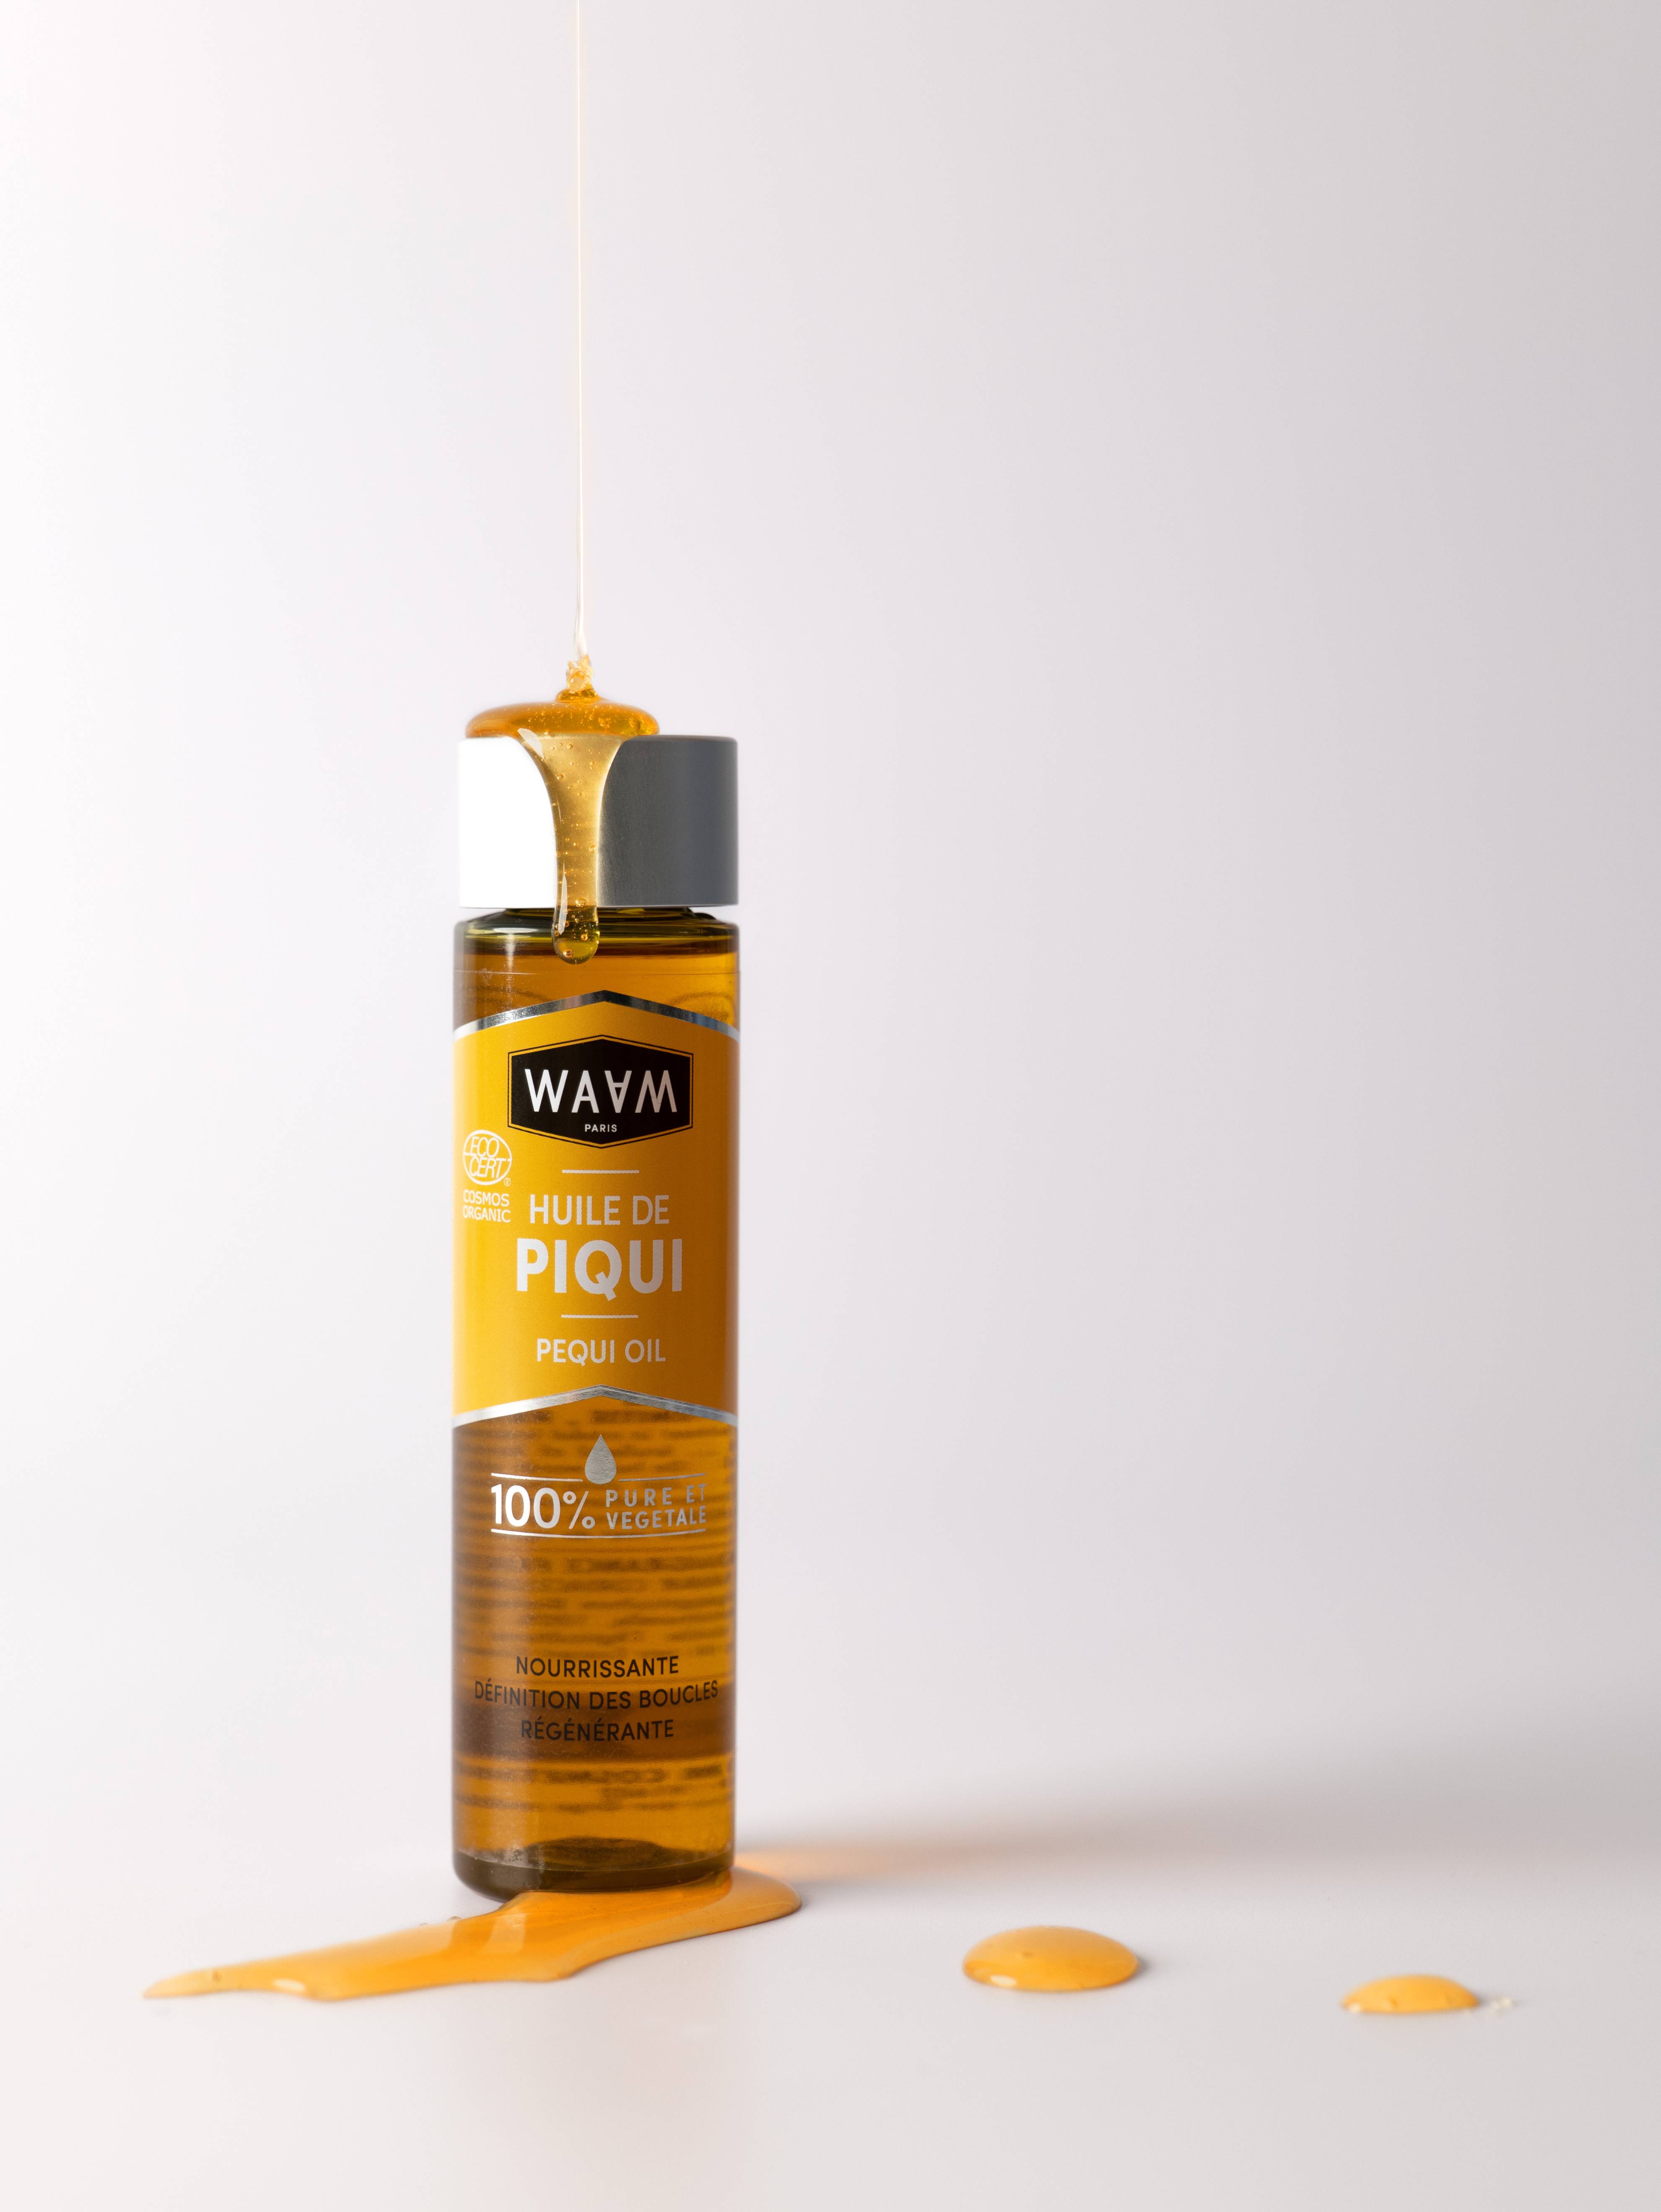 L’huile de Piqui vous aide à démêler et facilite le coiffage